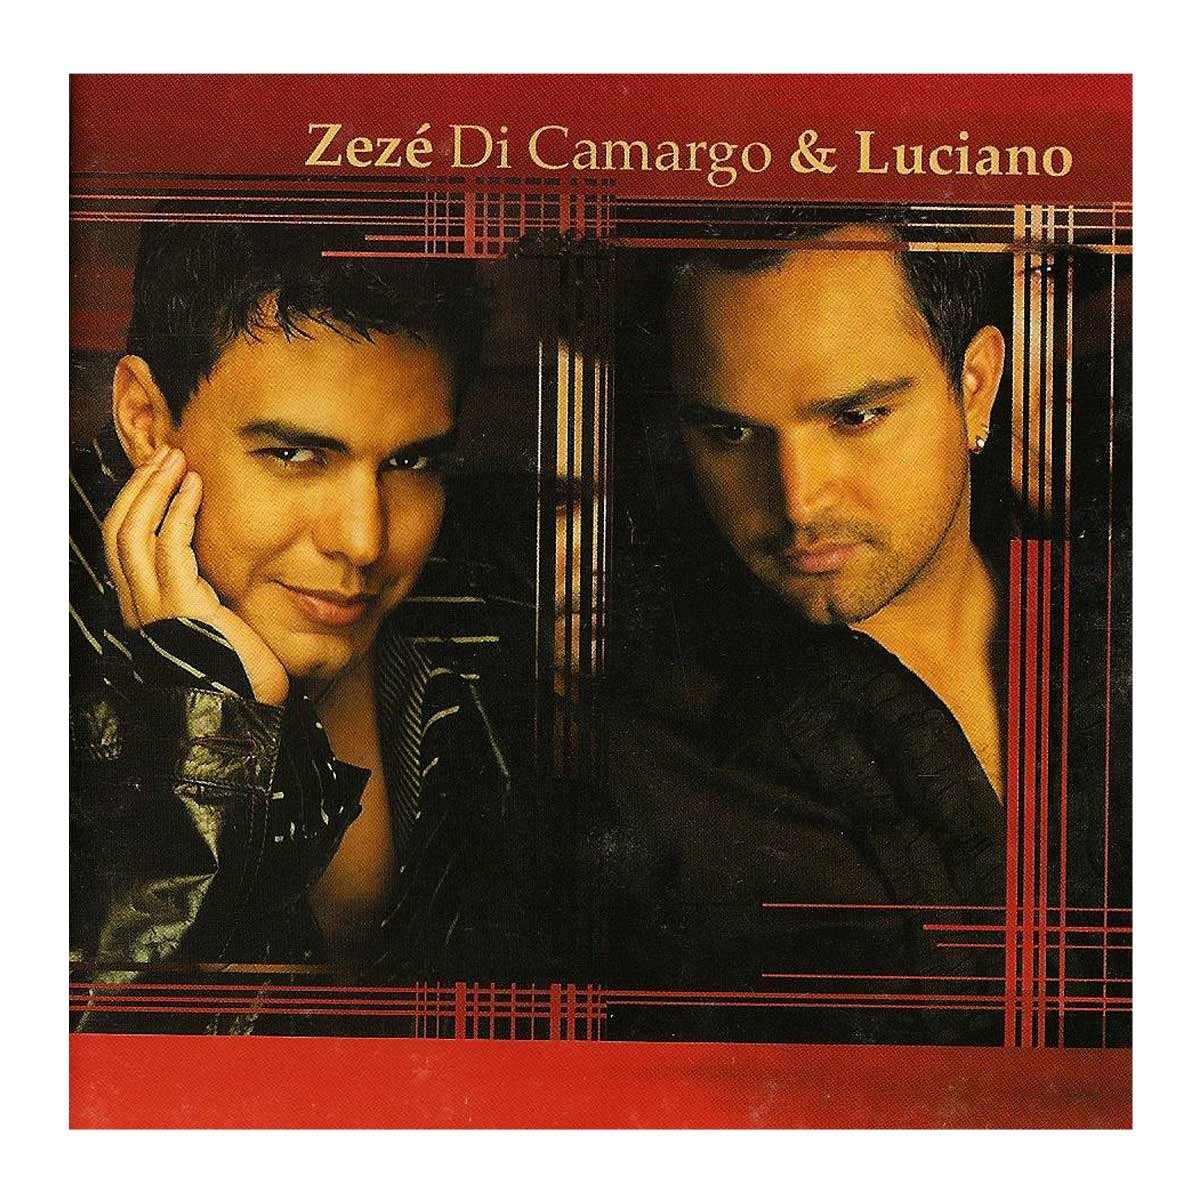 Cd Zezé Di Camargo E Luciano 2002 Original E Lacrado R 15 90 Em